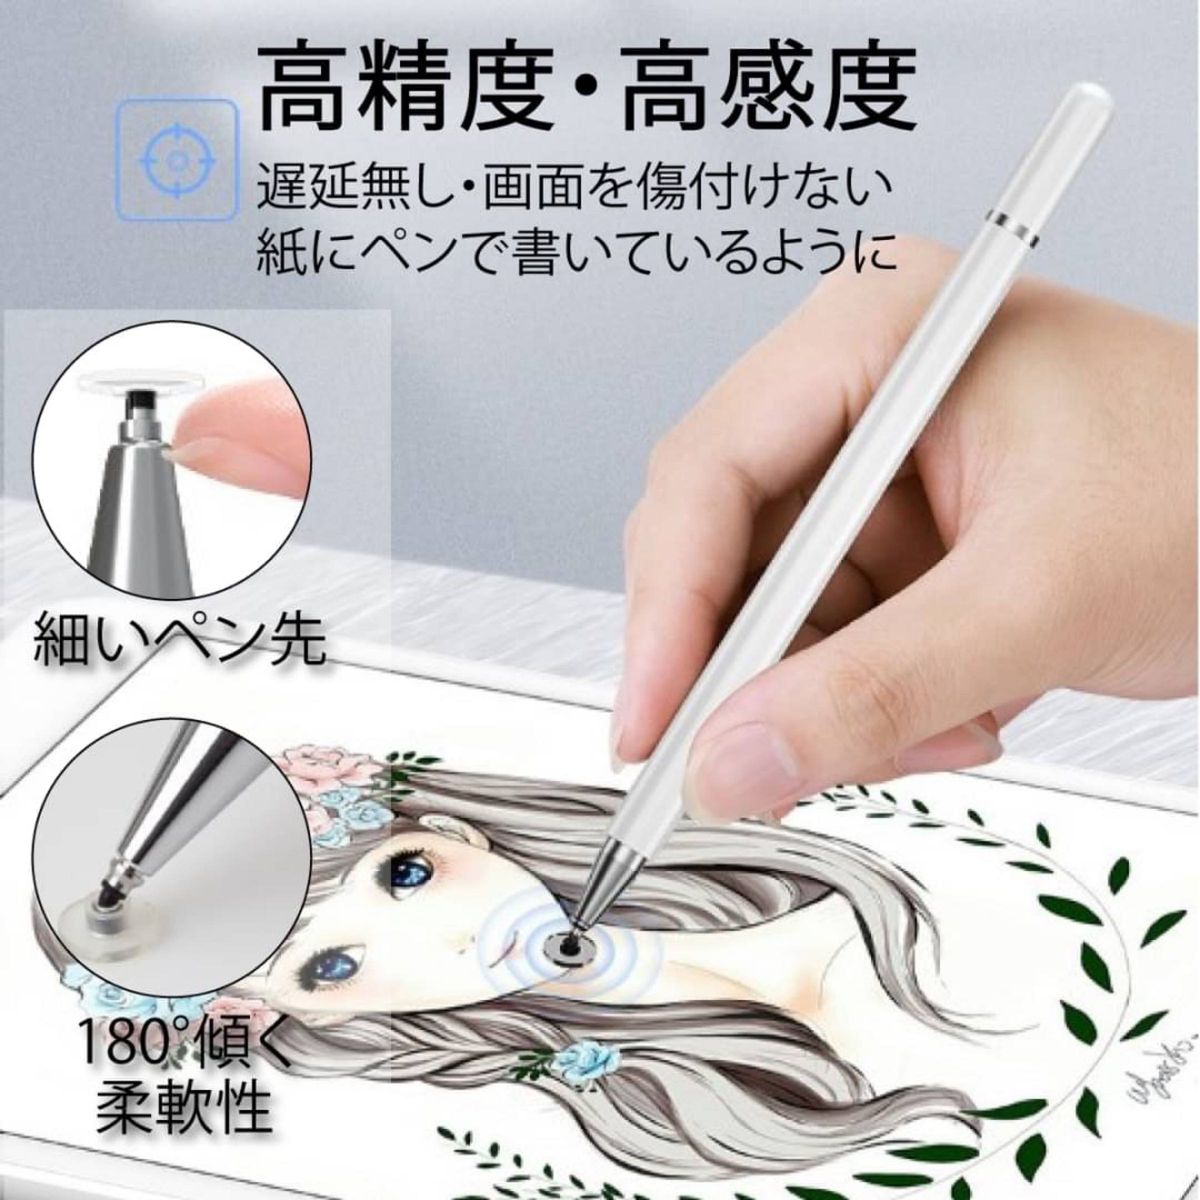 タッチペン スタイラスペン 高感度 iPhone iPad スマホ タブレット